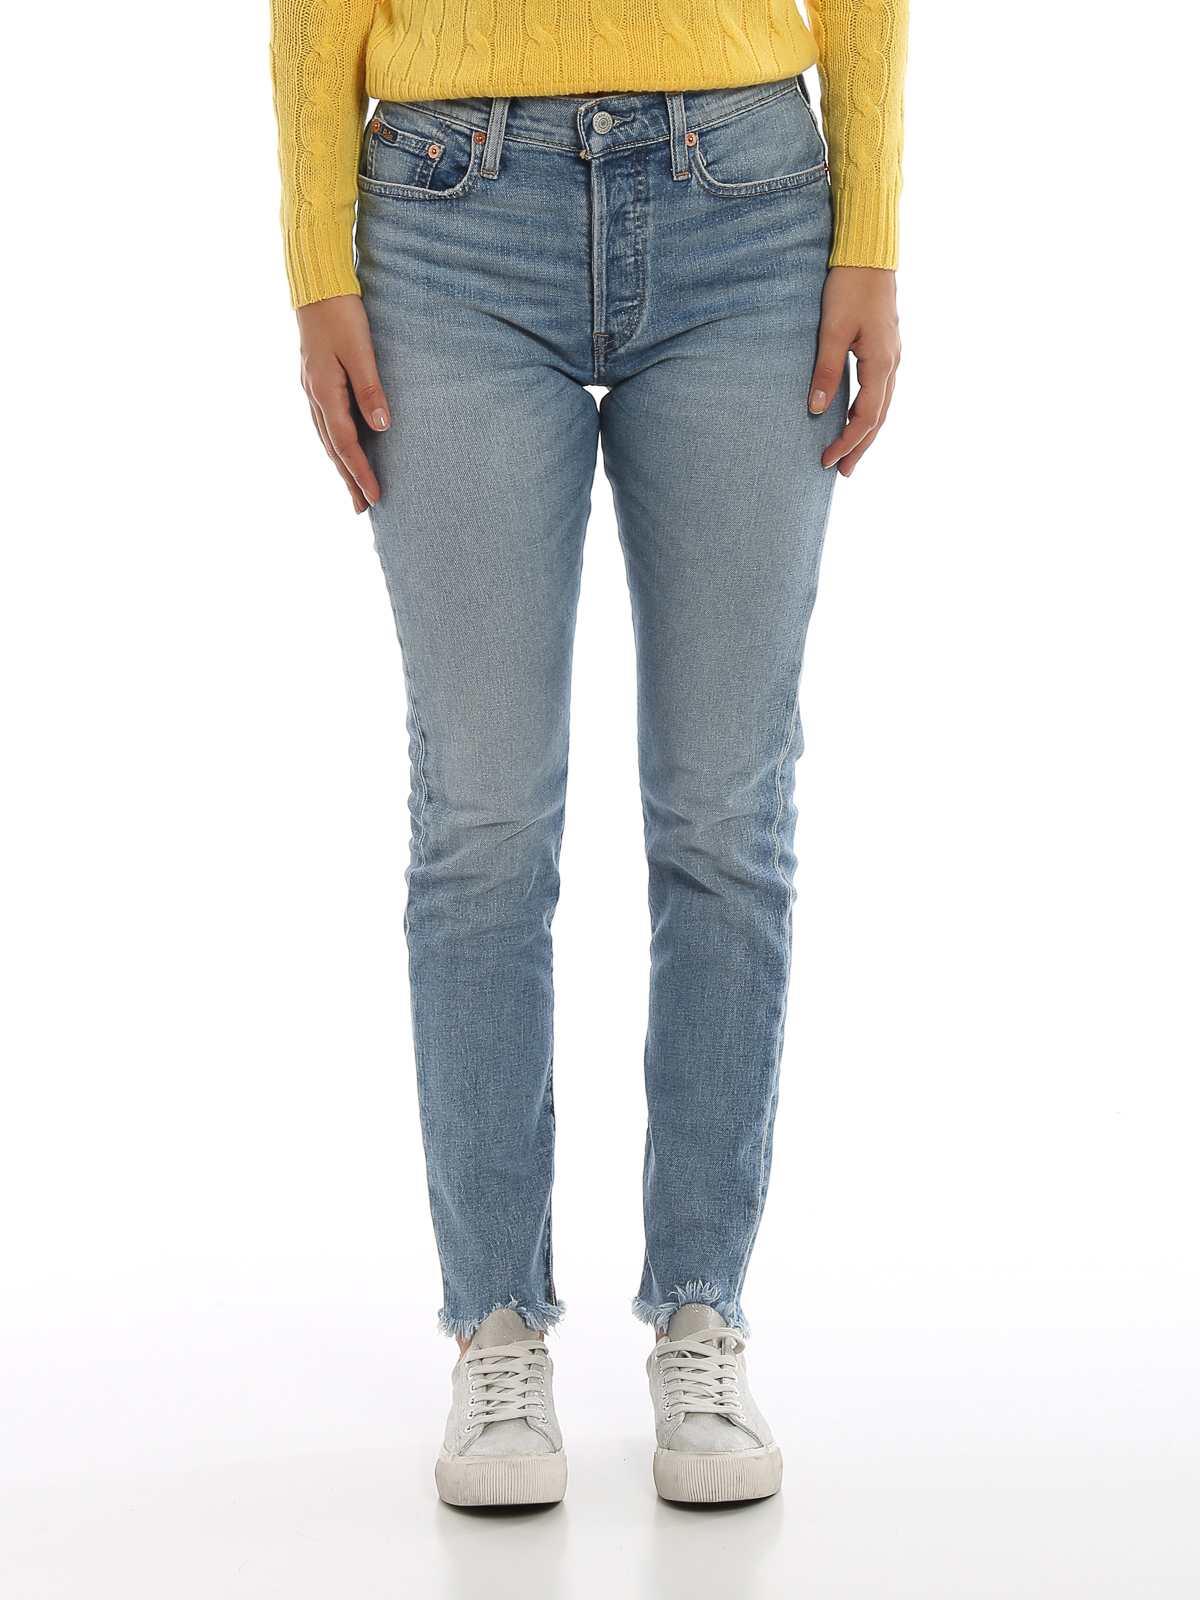 ralph lauren skinny jeans